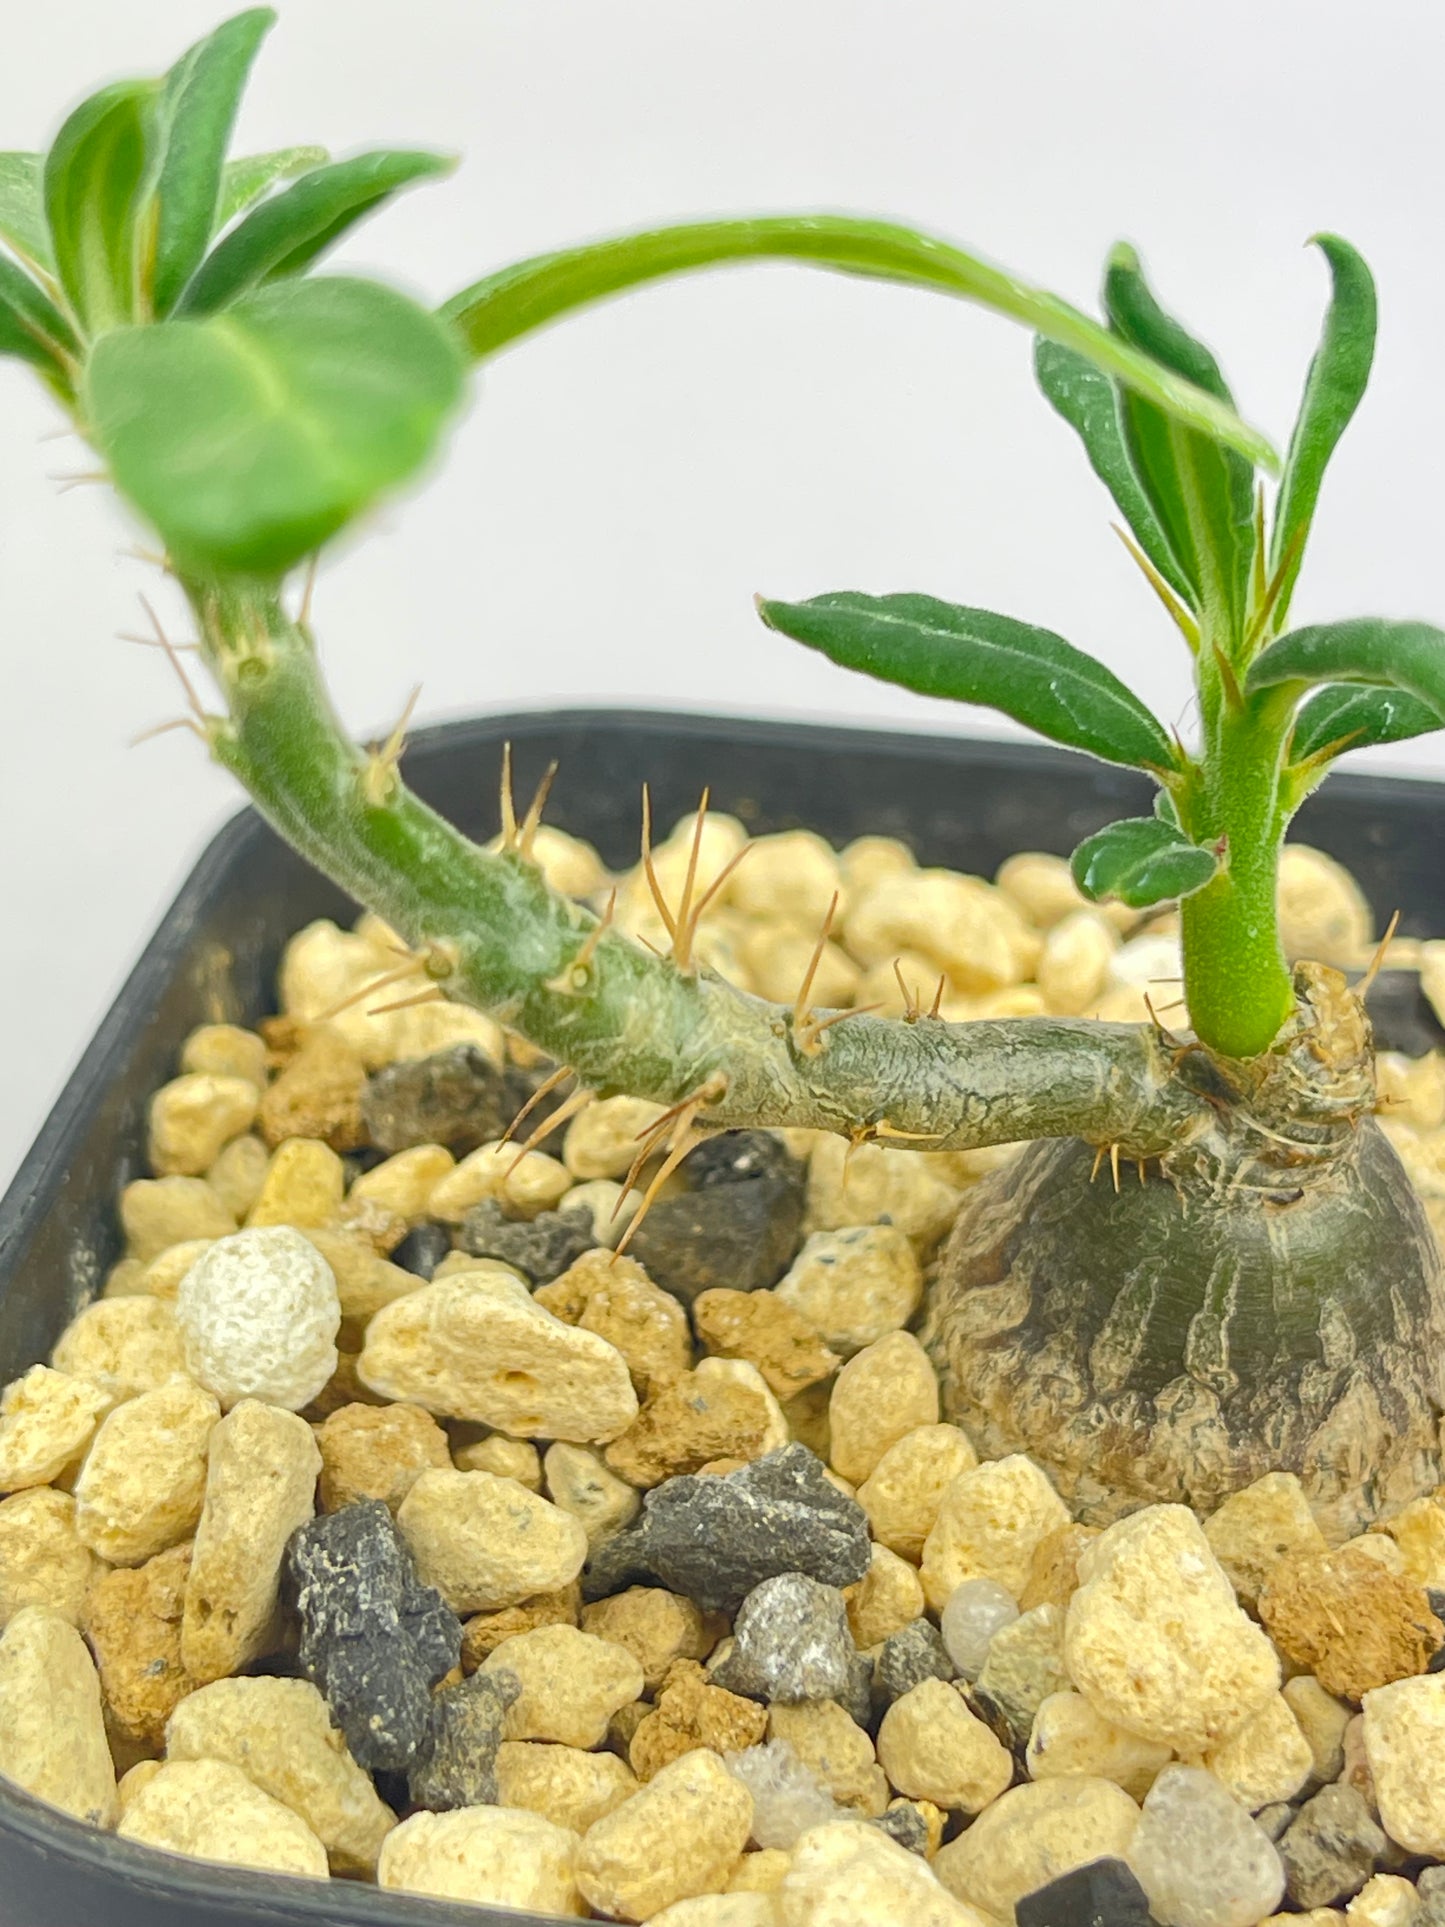 パキポディウム サキュレンタム「Pachypodium succulentum」/PA0007 ①